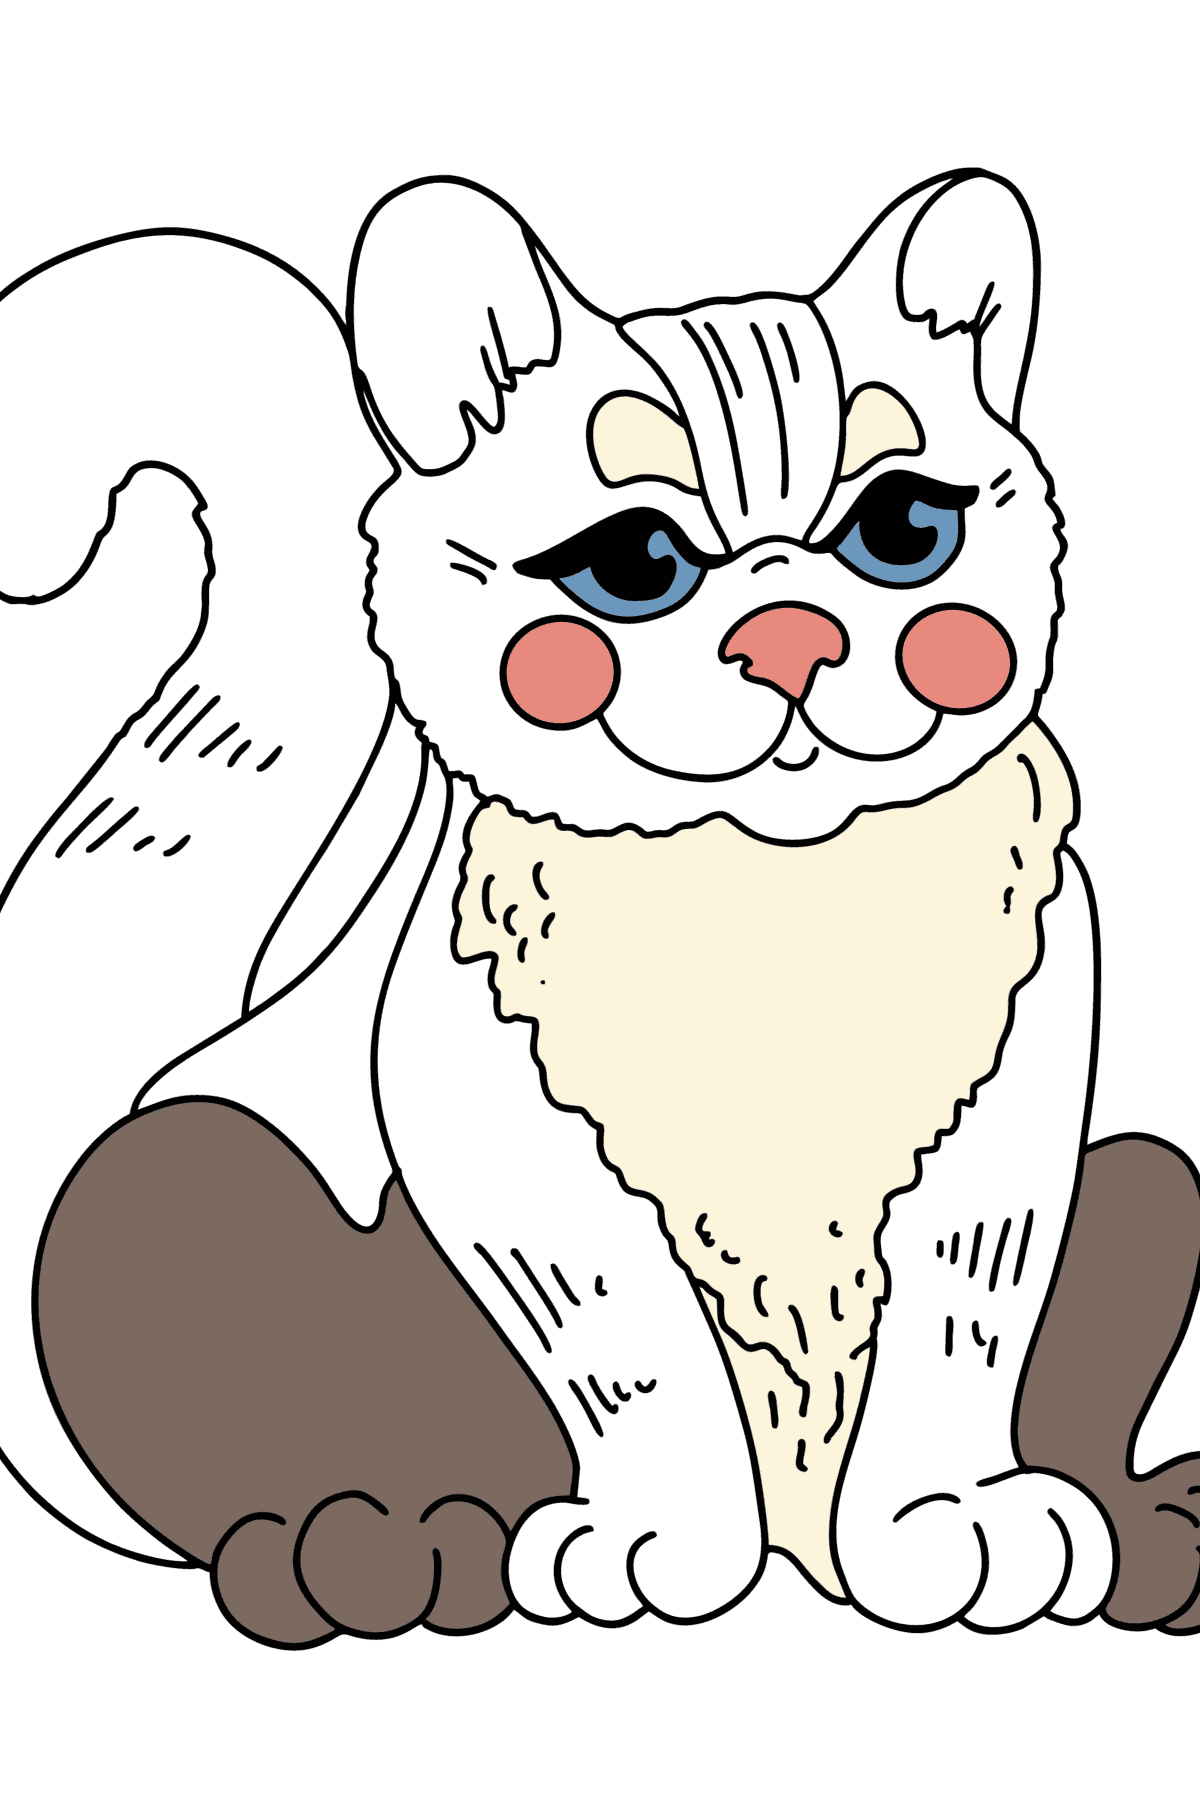 Målarbild tecknad kattunge - Målarbilder För barn